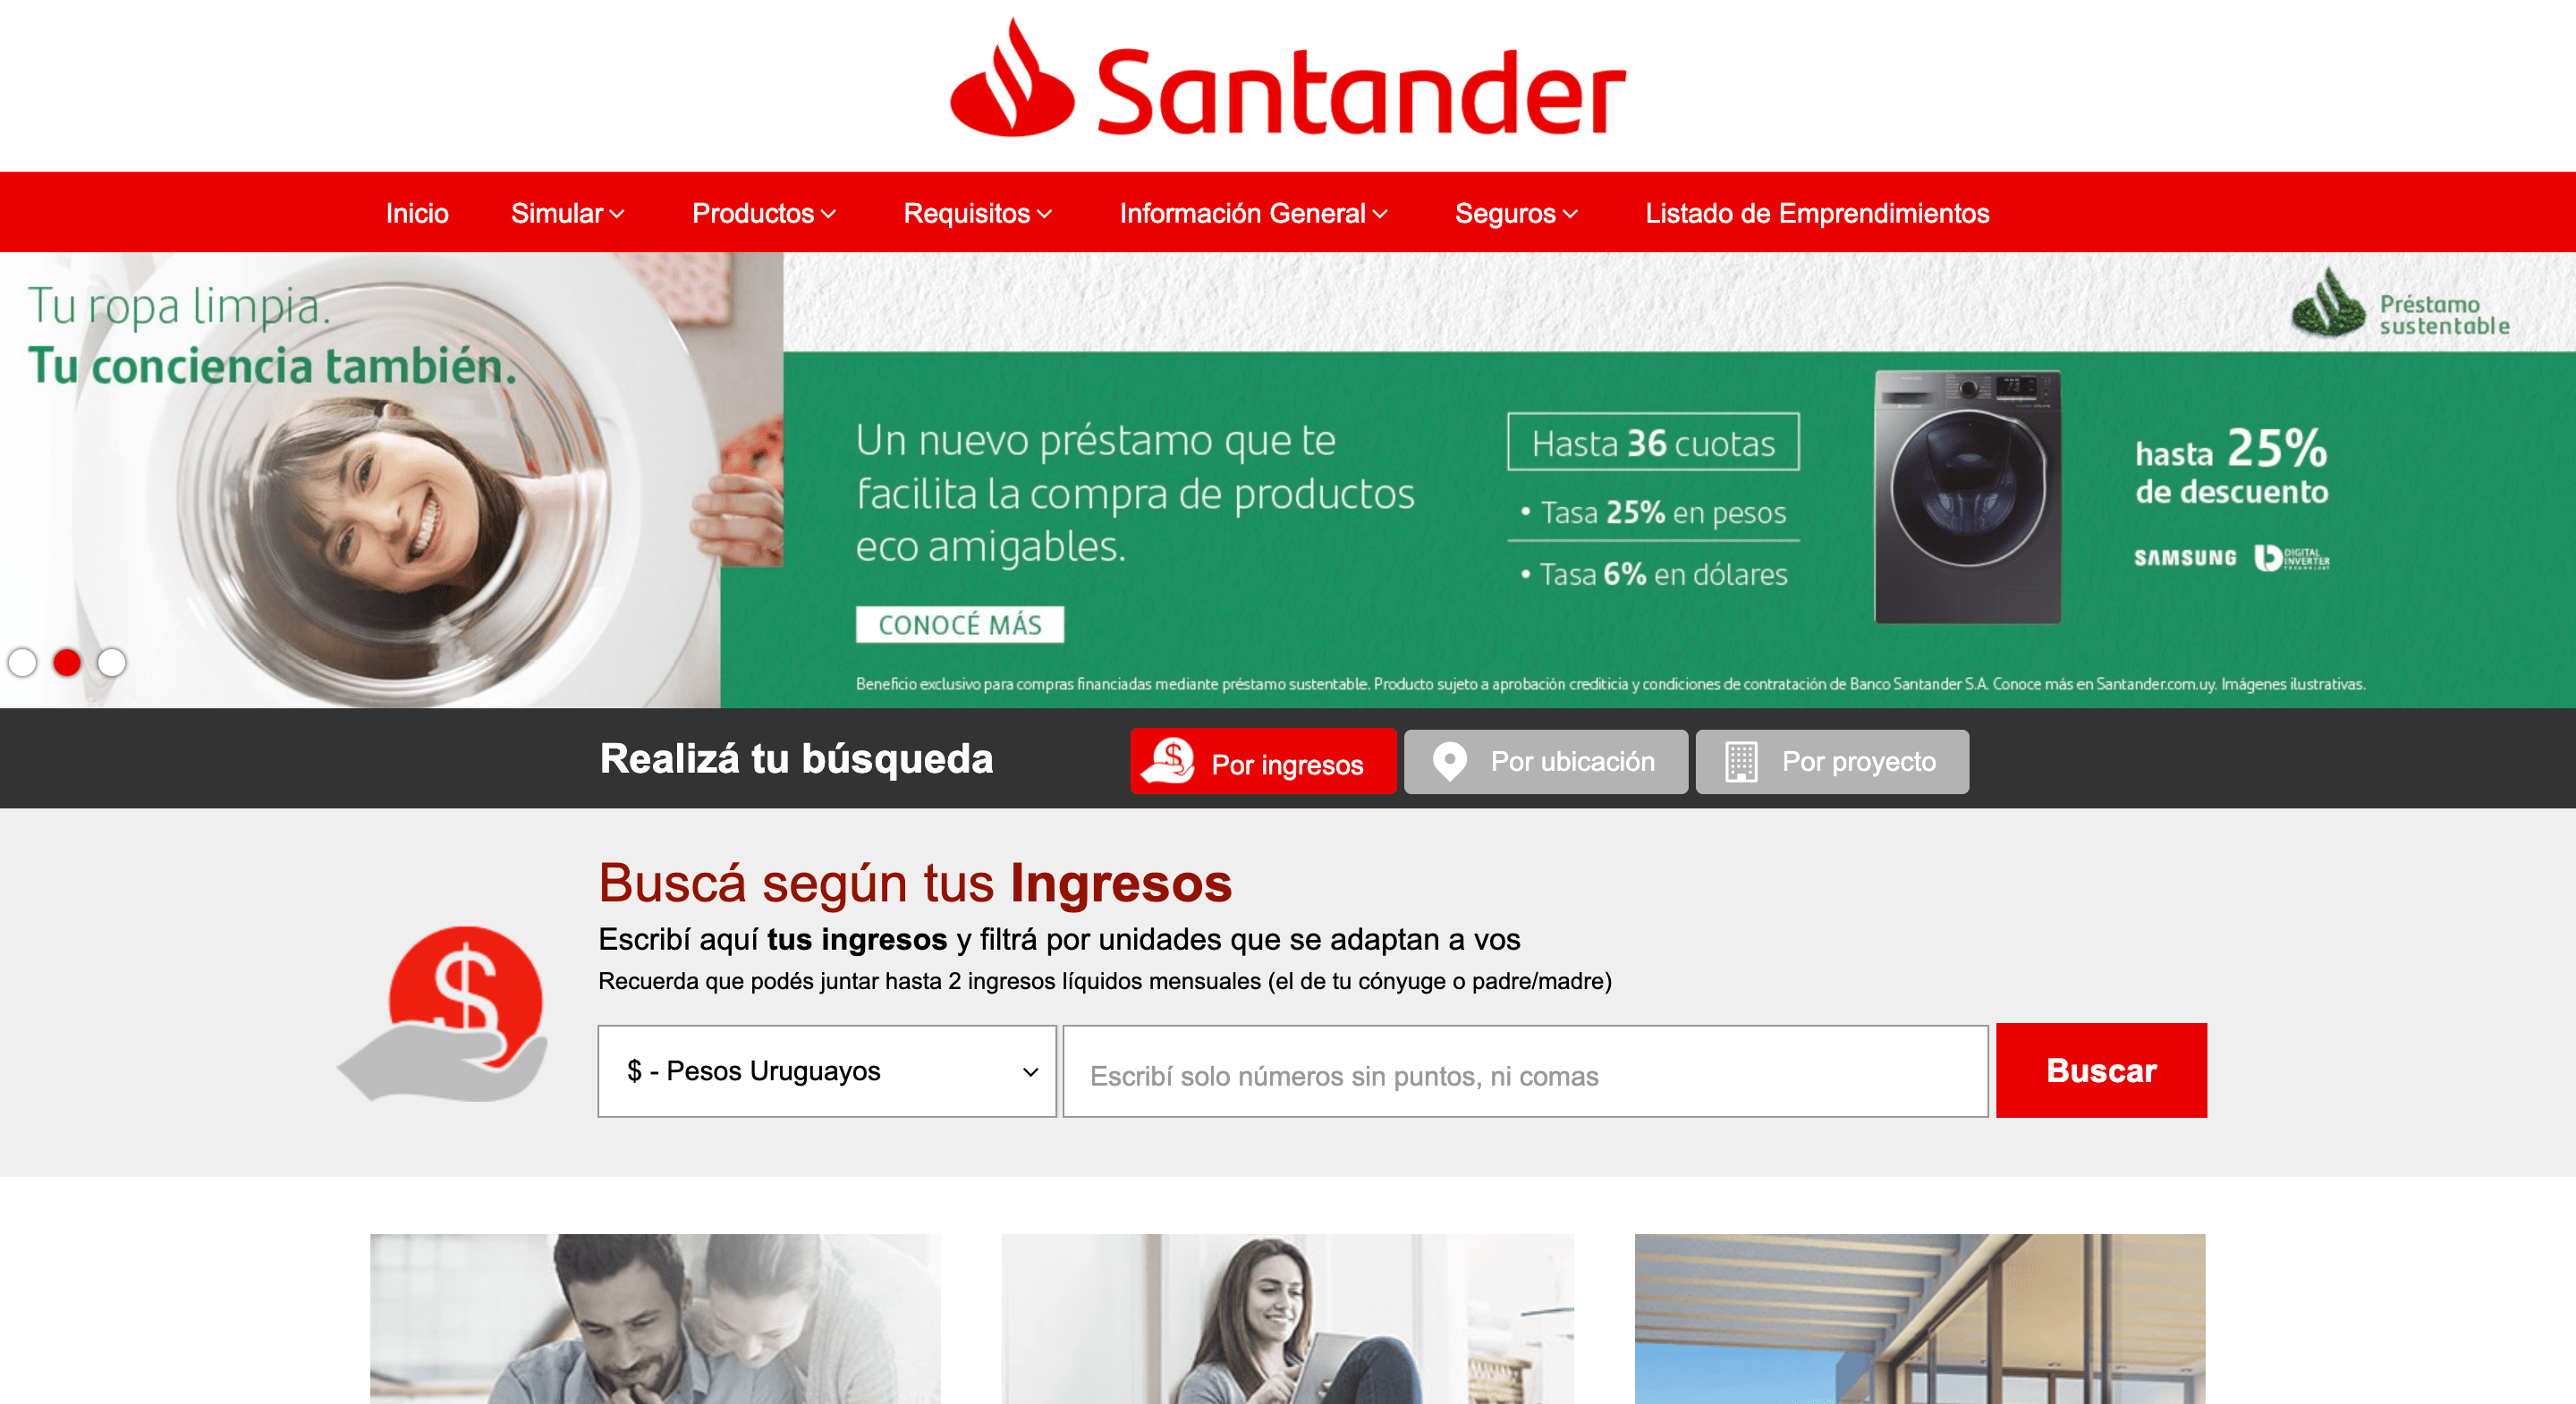 Santander Crédito Hipotecario opiniones, comentarios